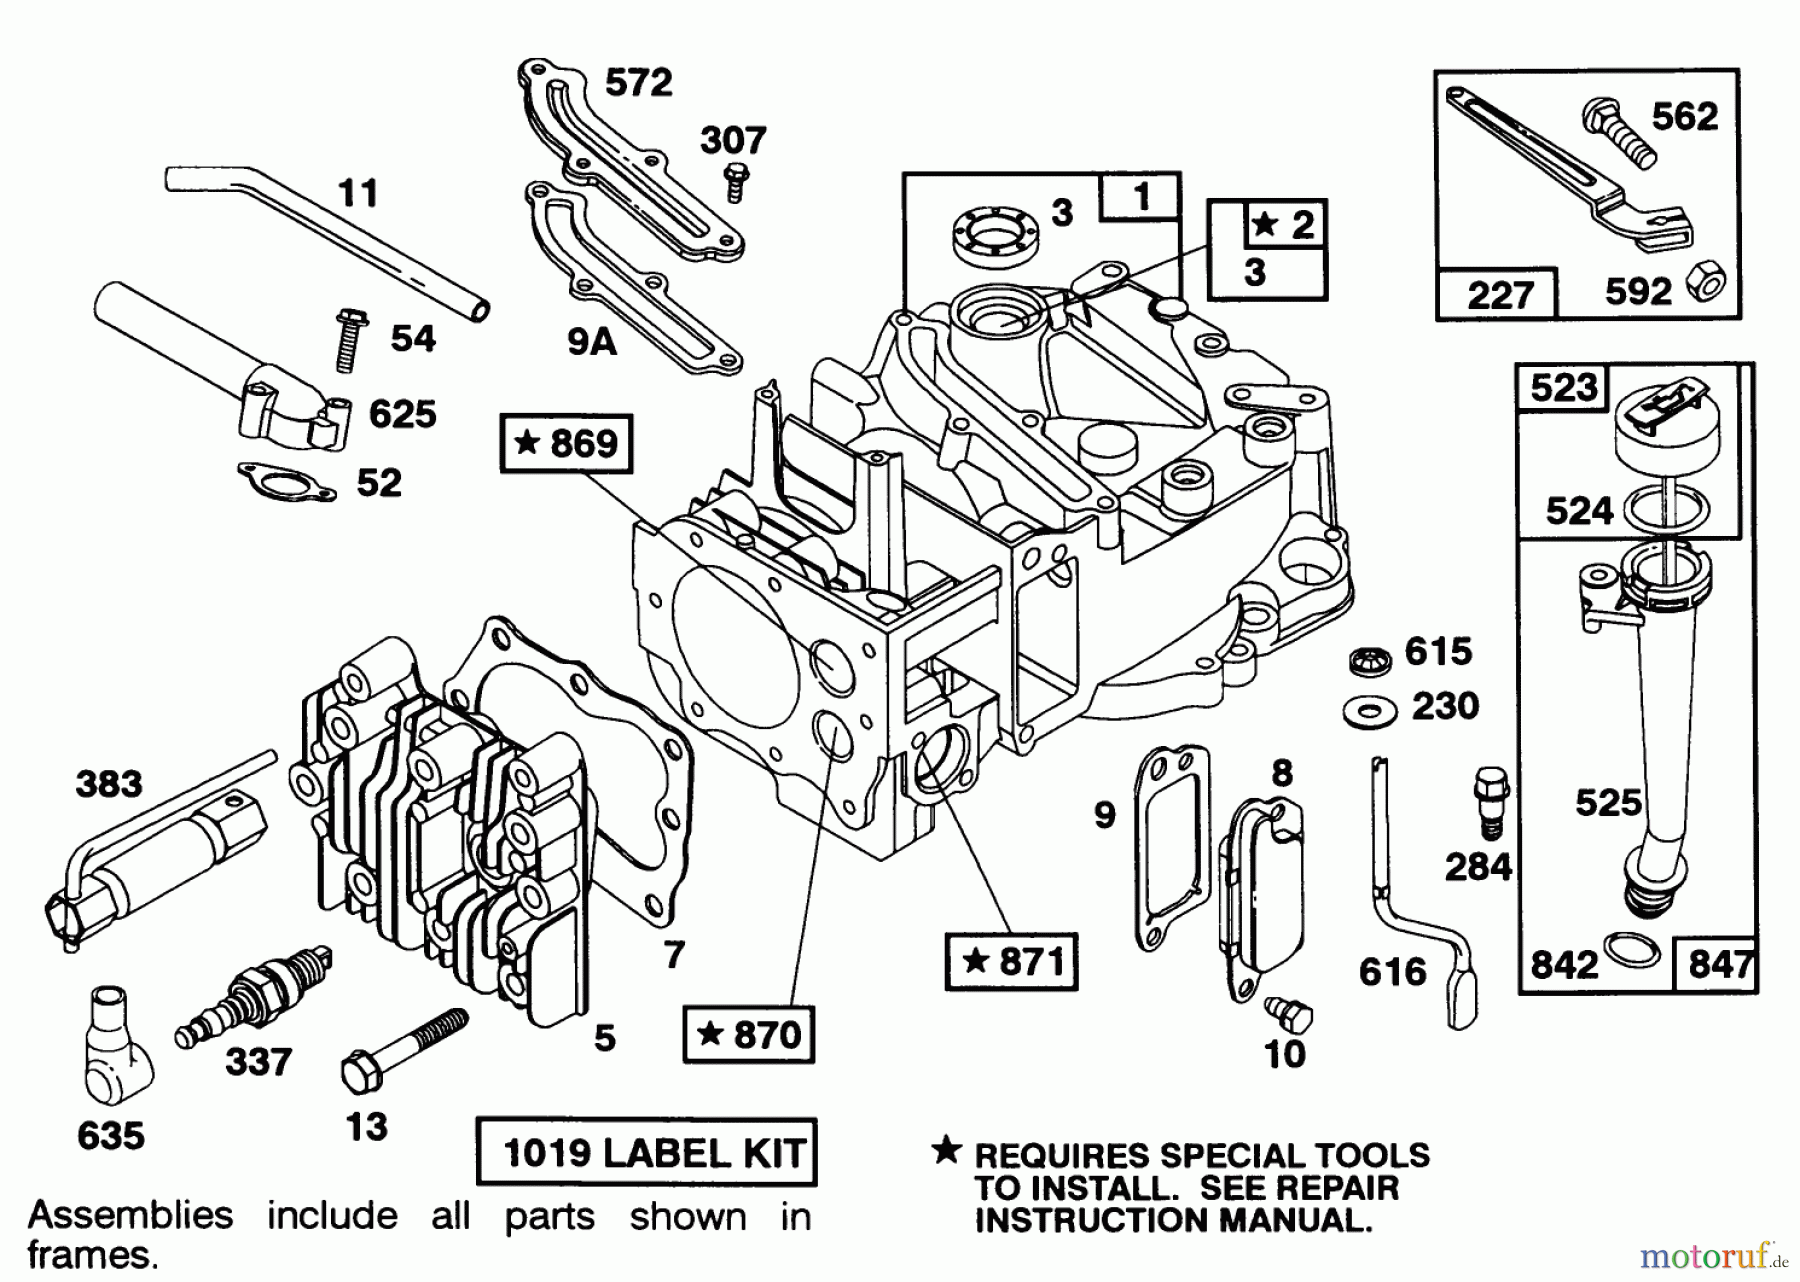  Toro Neu Mowers, Walk-Behind Seite 1 16404 - Toro Lawnmower, 1991 (1000001-1999999) ENGINE BRIGGS & STRATTON MODEL 122702-3171-01 #1